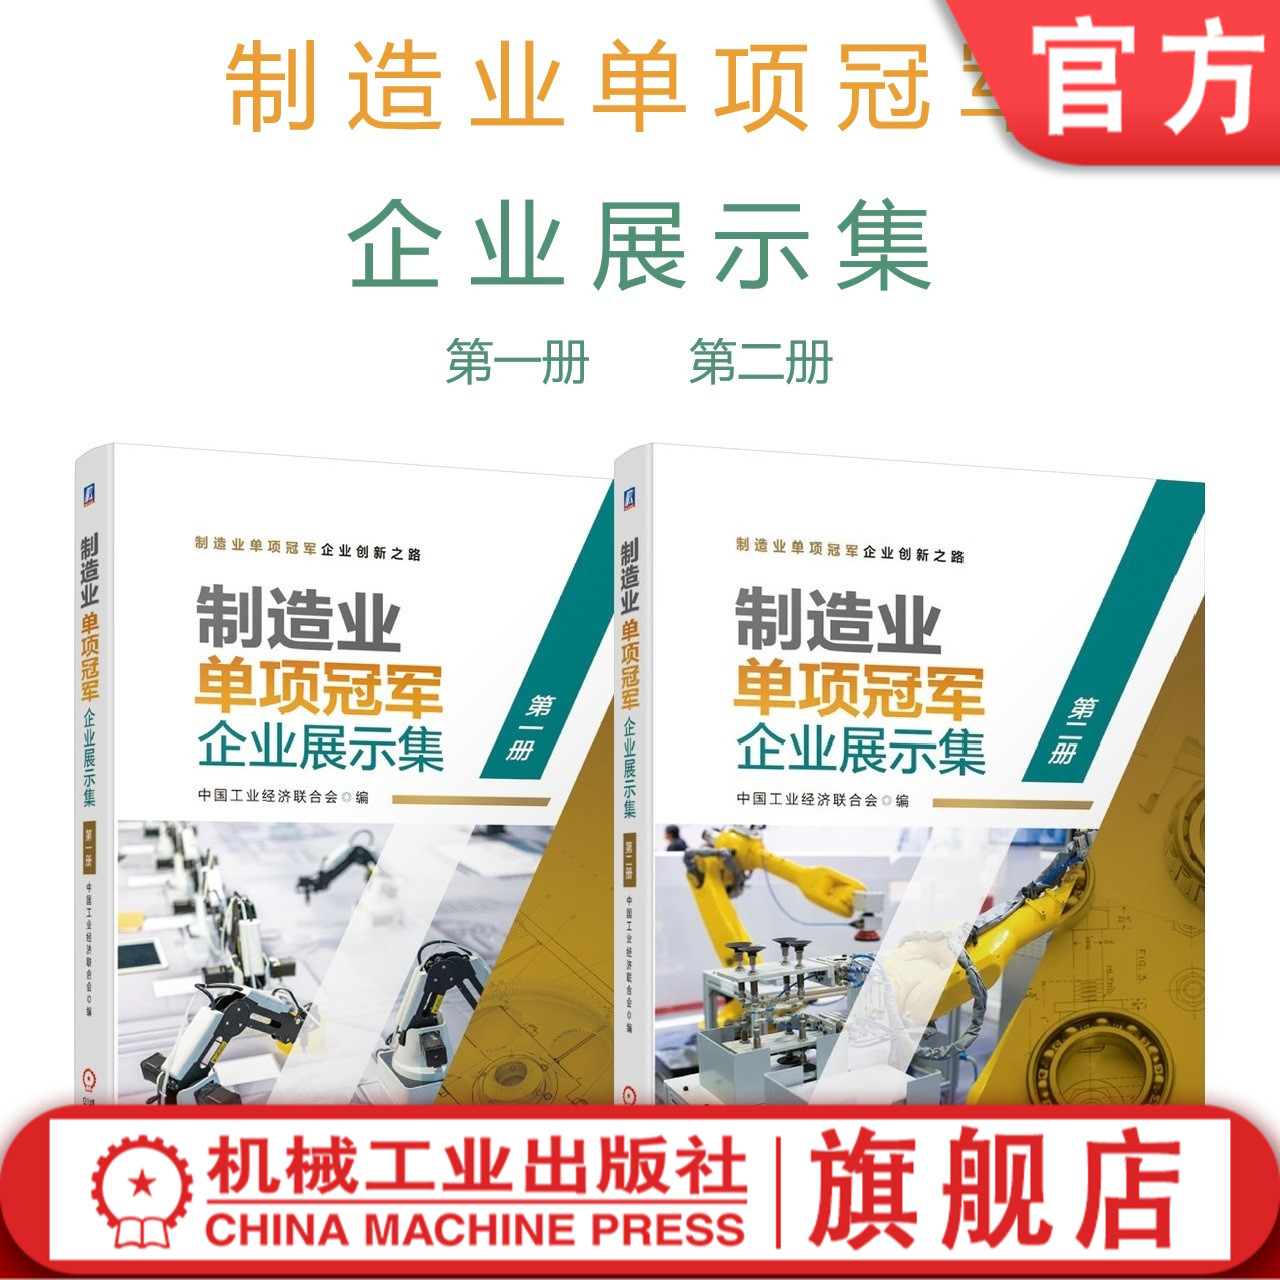 正版包邮 套装 制造业单项冠军企业展示集 共2册 第 一册 第二册 中国工业经济联合会 机械工业出版社